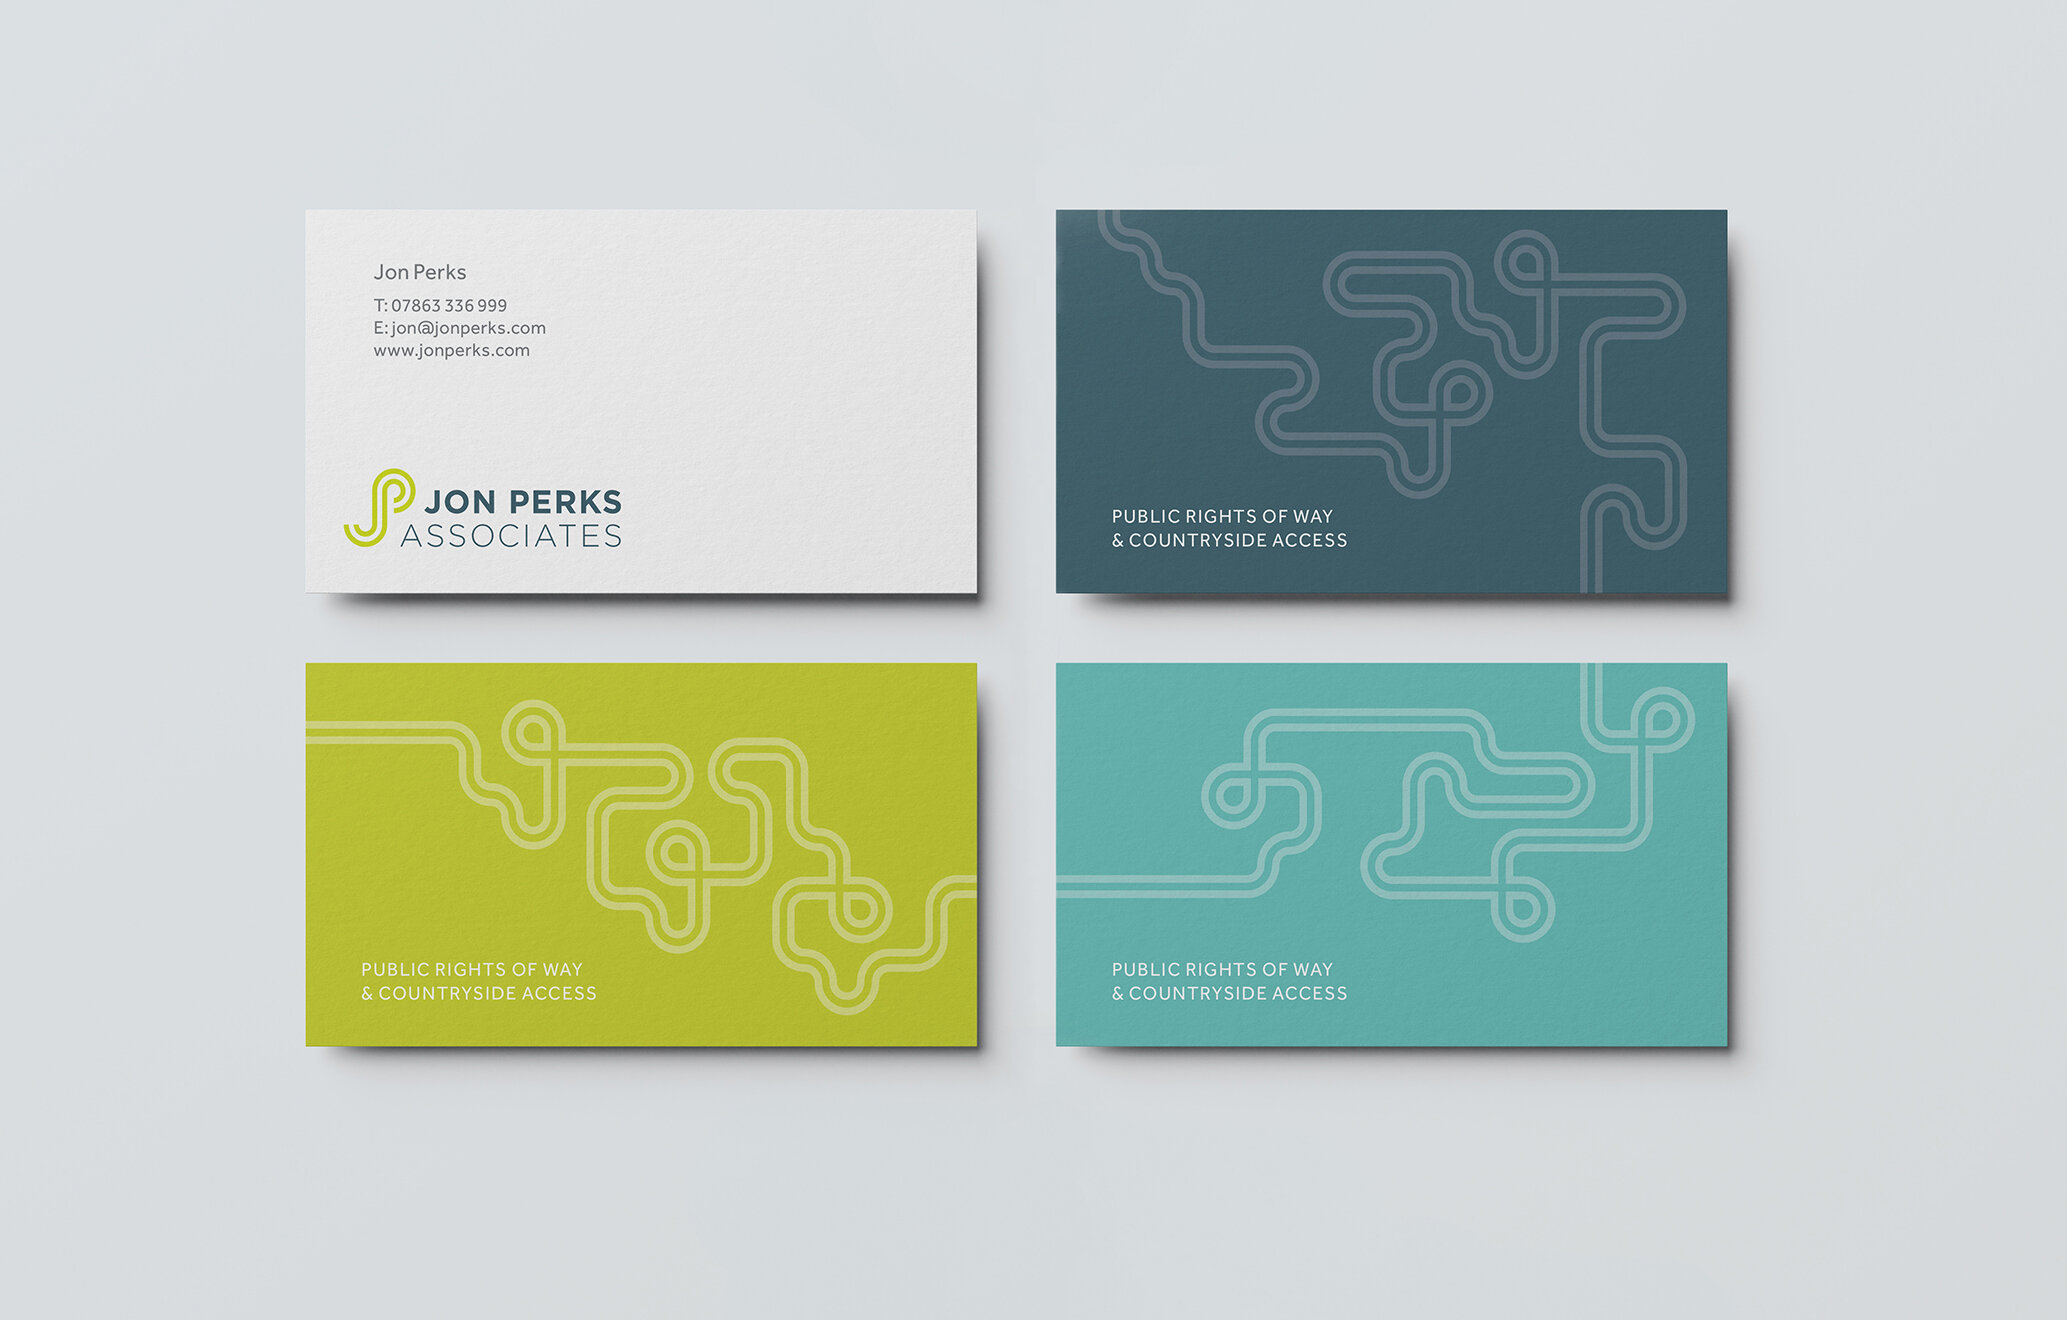 Jon Perks Associates Andy Bain Branding design